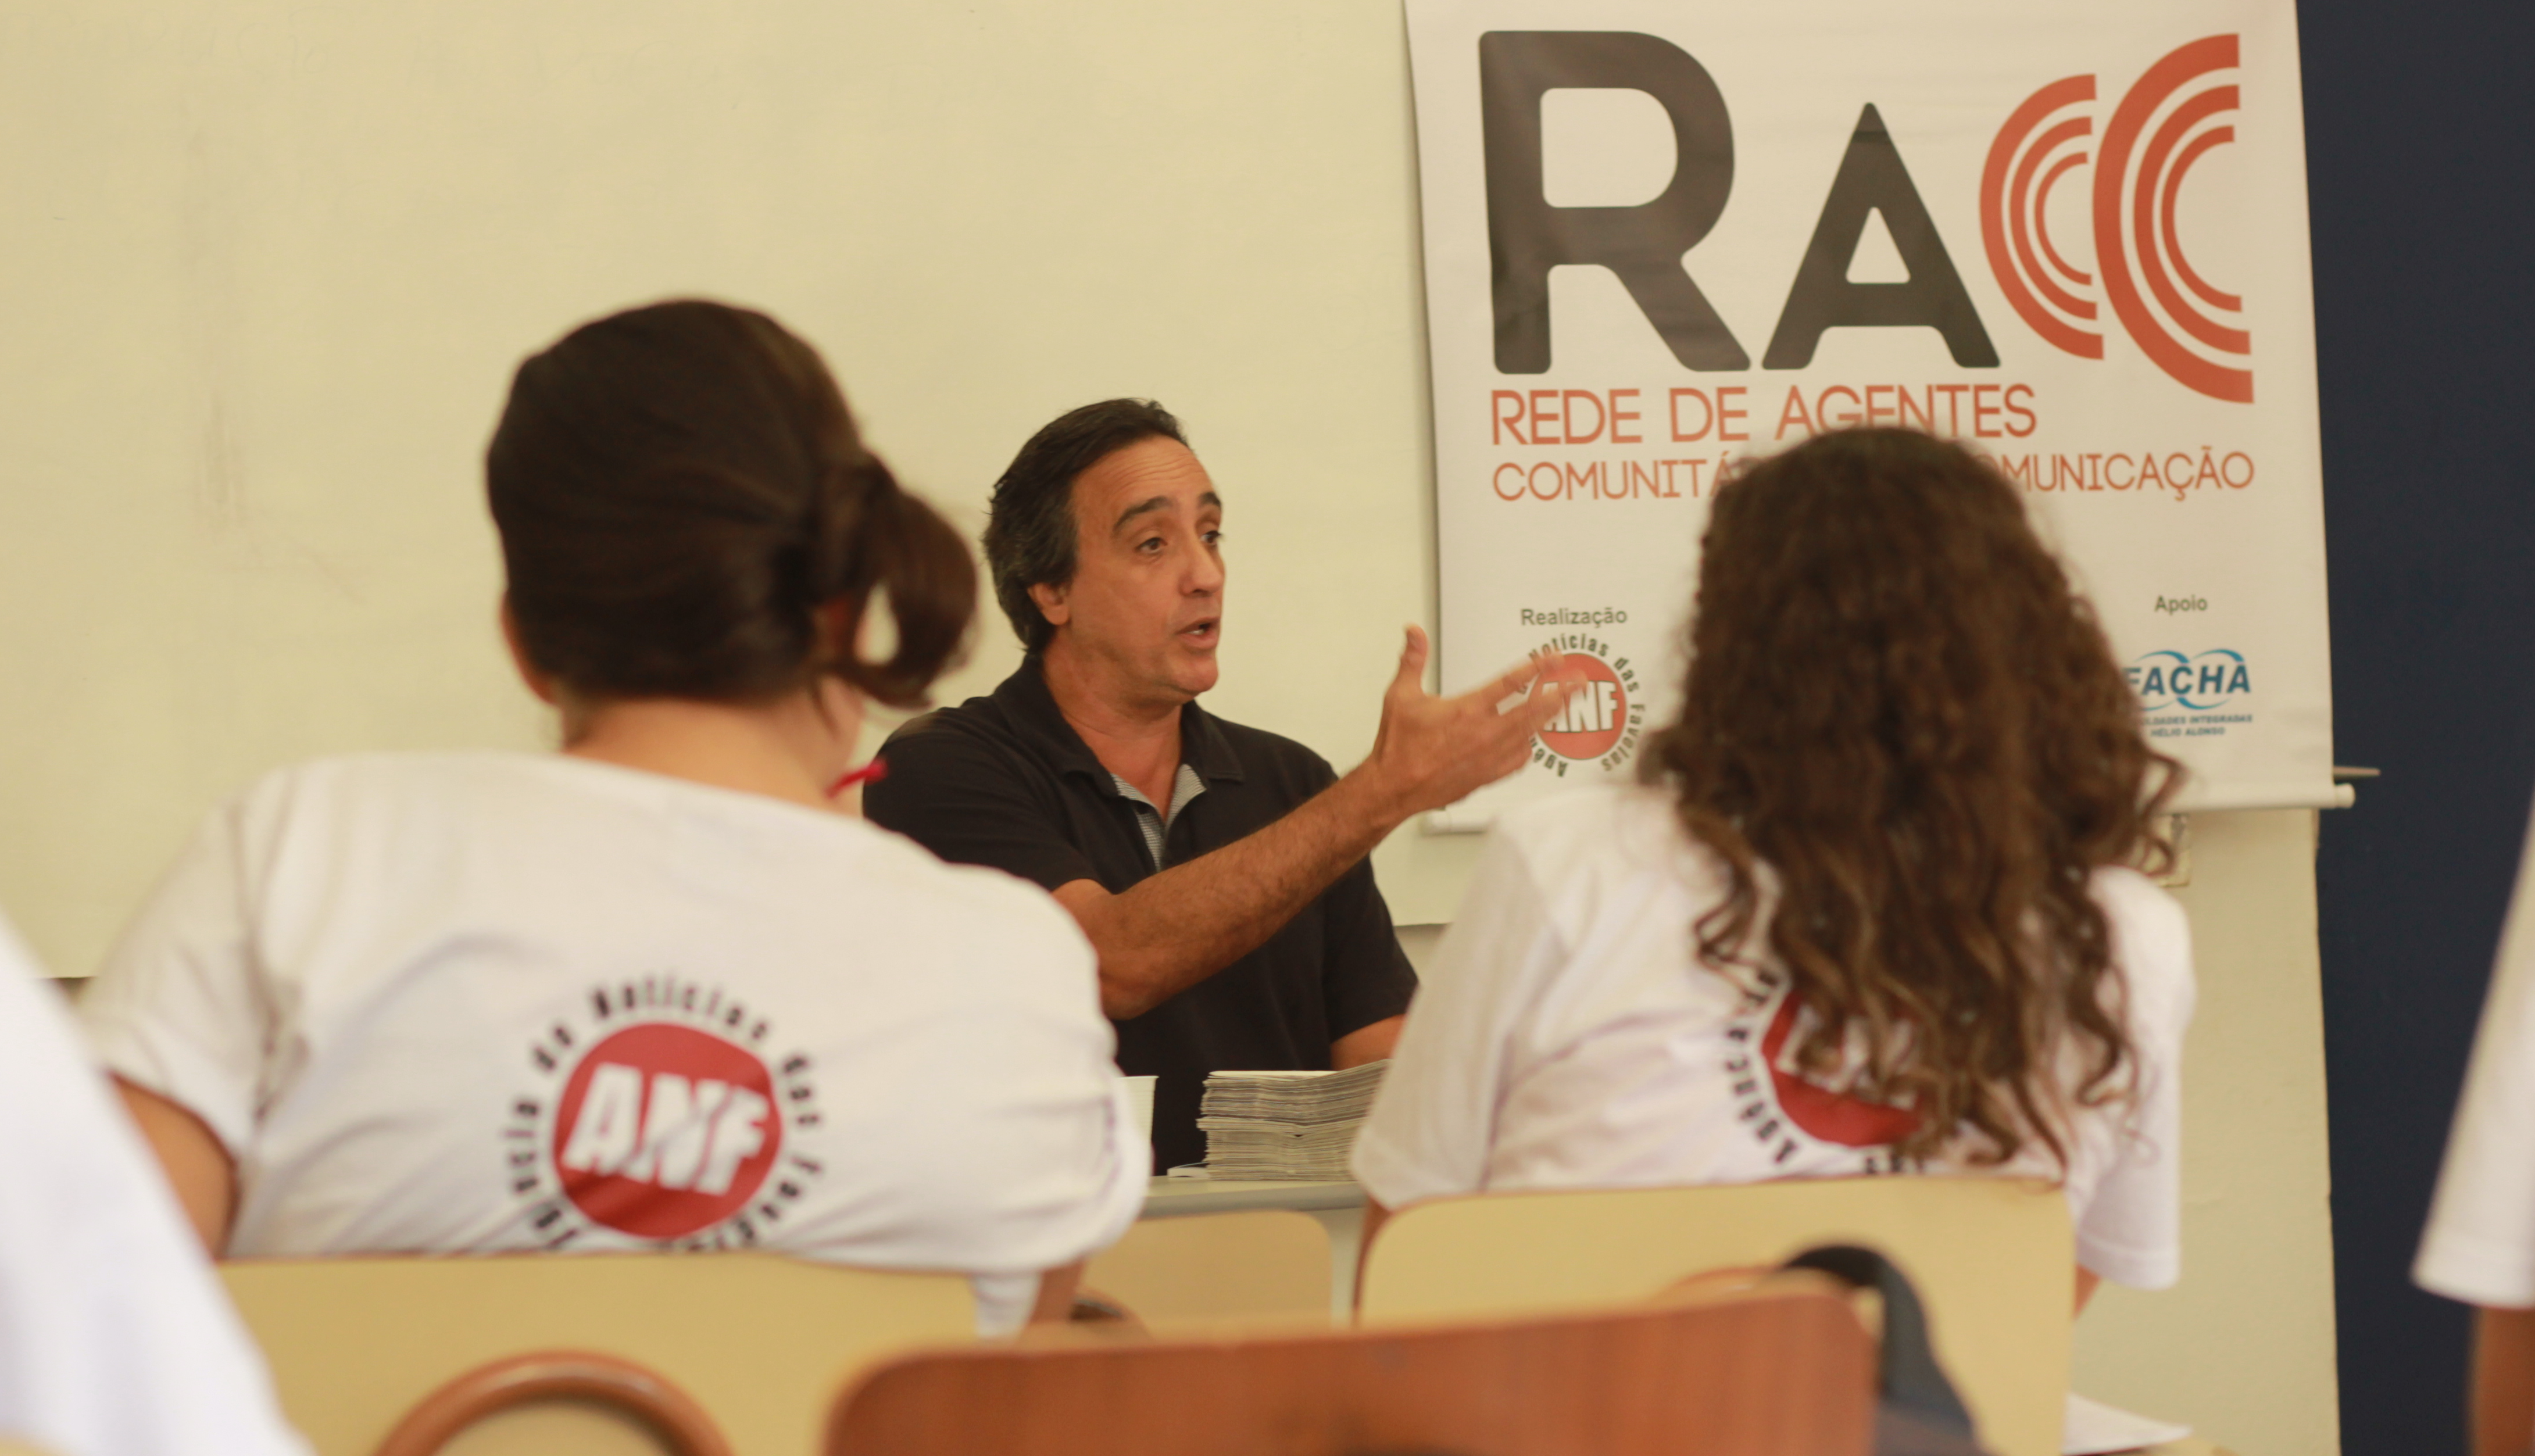 RACC volta ao Rio de Janeiro oferecendo 50 vagas para jovens de favelas